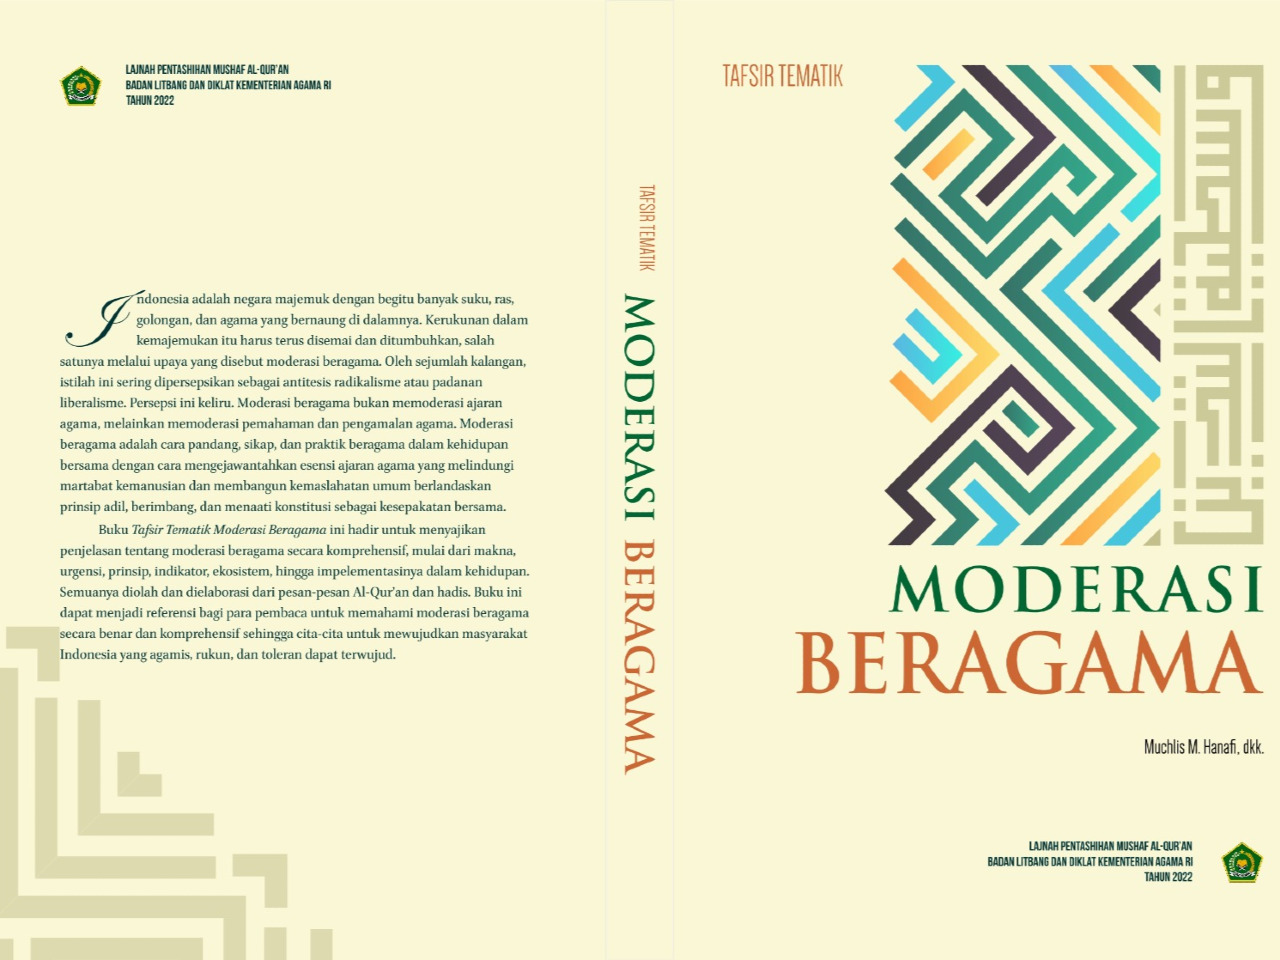 Inilah Kontribusi LPMQ Perkuat Moderasi Beragama dan Digitalisasi Al-Qur'an di Indonesia